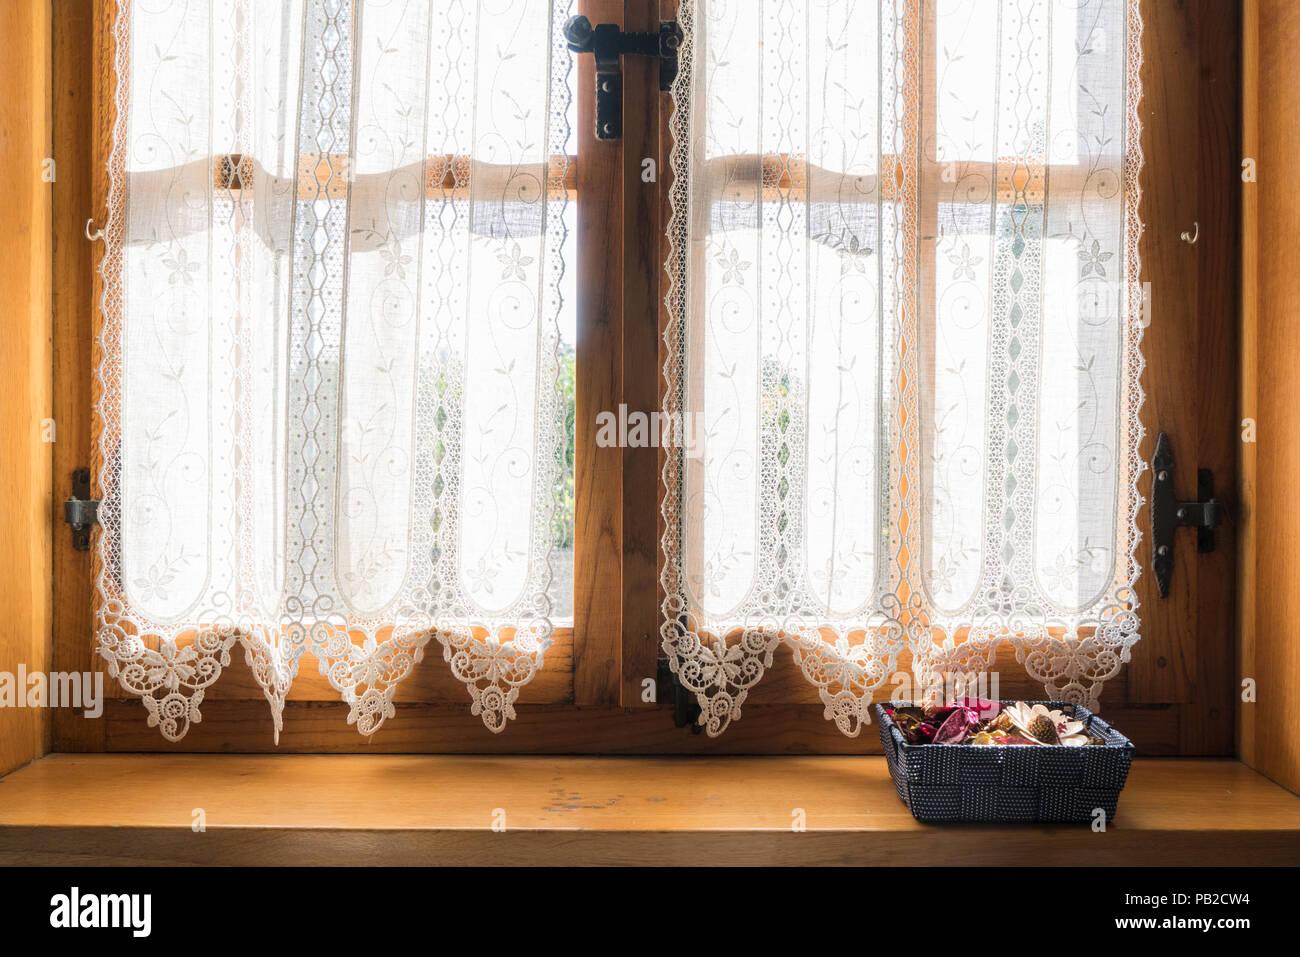 Eine Holz- Fenster mit einem weißen bestickten Vorhang und einen kleinen Korb mit getrockneten Blumen auf der Fensterbank Stockfoto